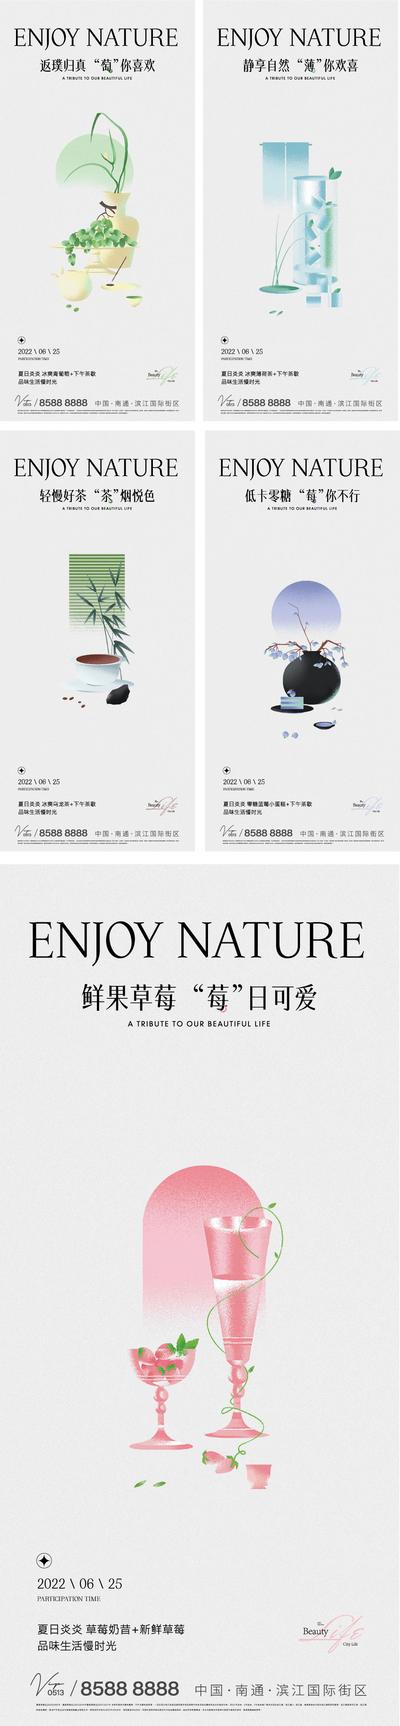 【南门网】海报 地产 下午茶 草莓 葡萄 薄荷 茶叶 新中式 简约 品质